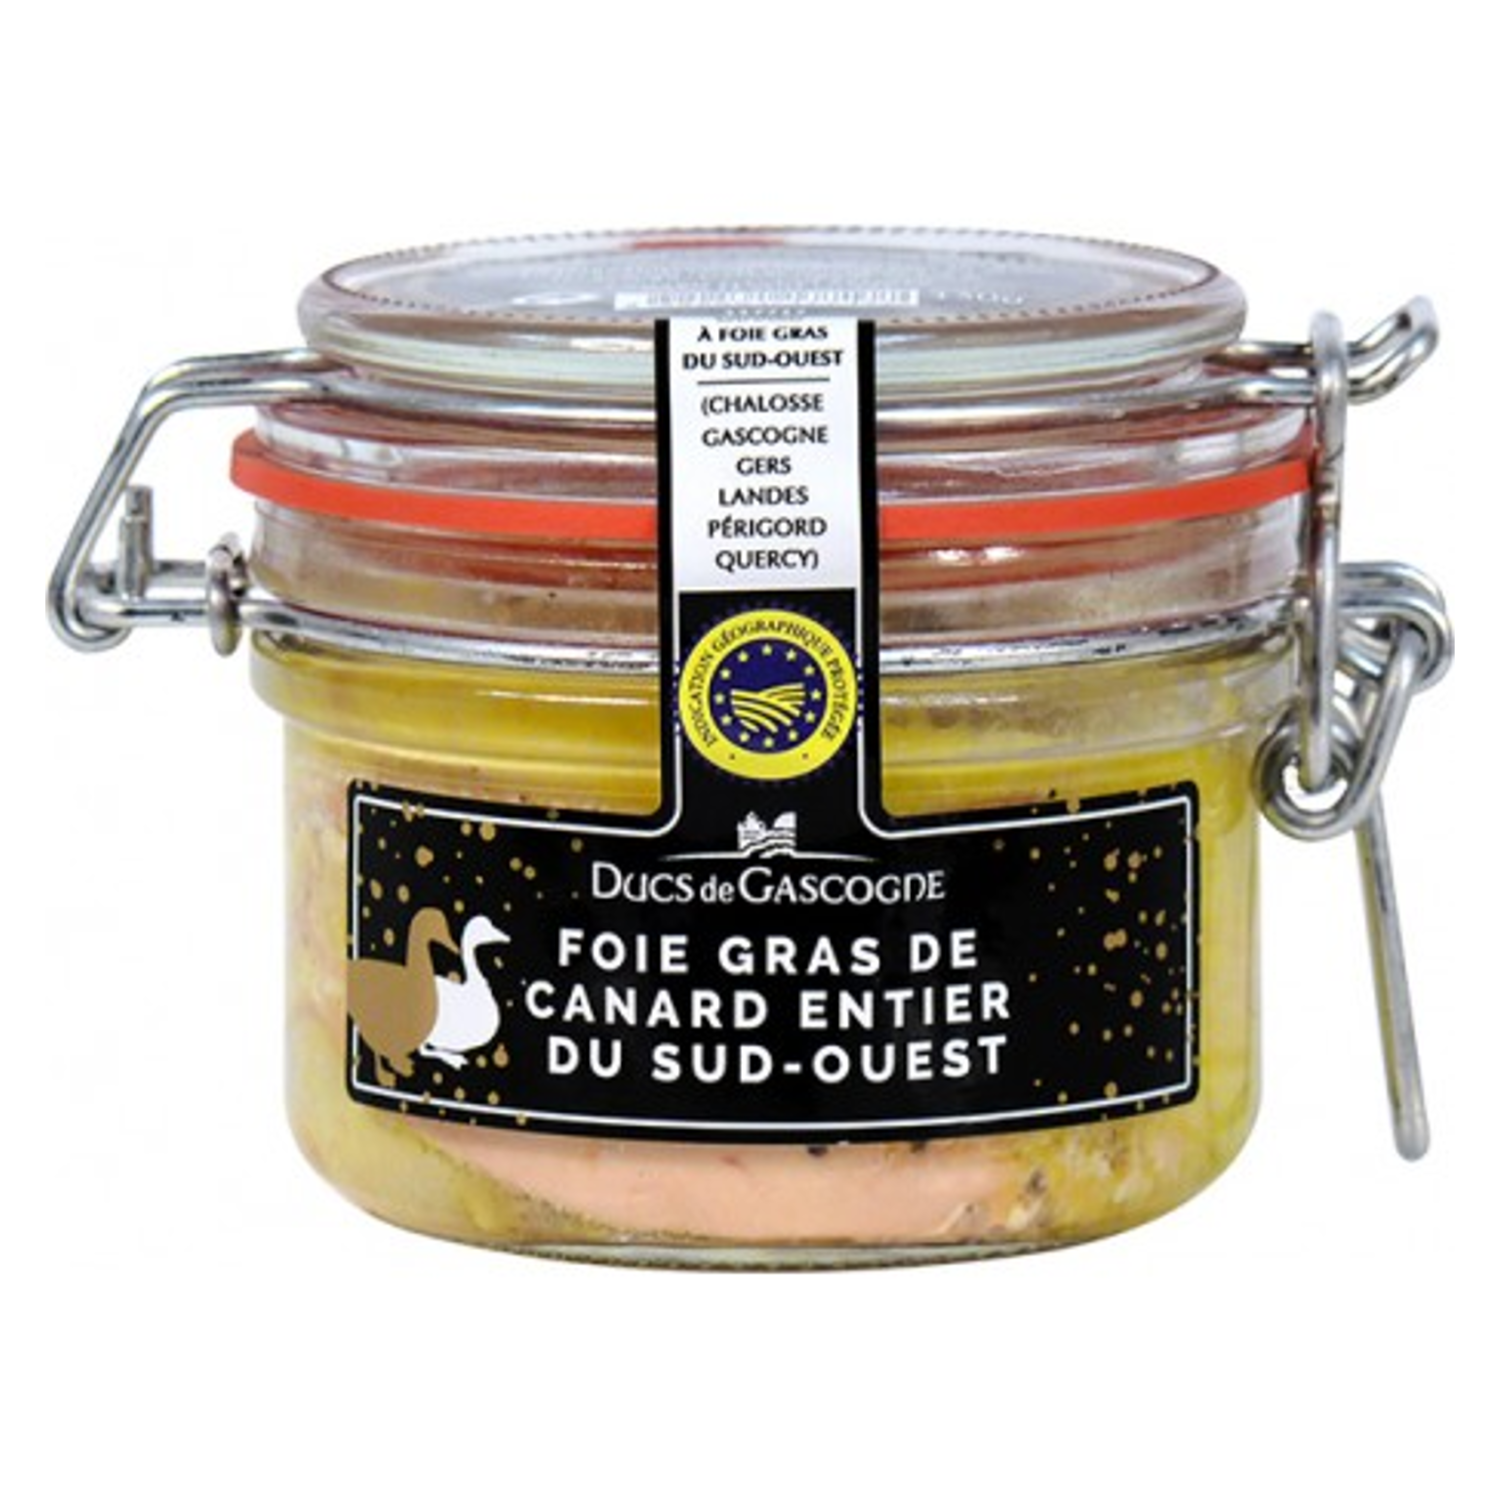 Foie gras de canard entier du Sud-Ouest 130g - Ducs de Gascogne